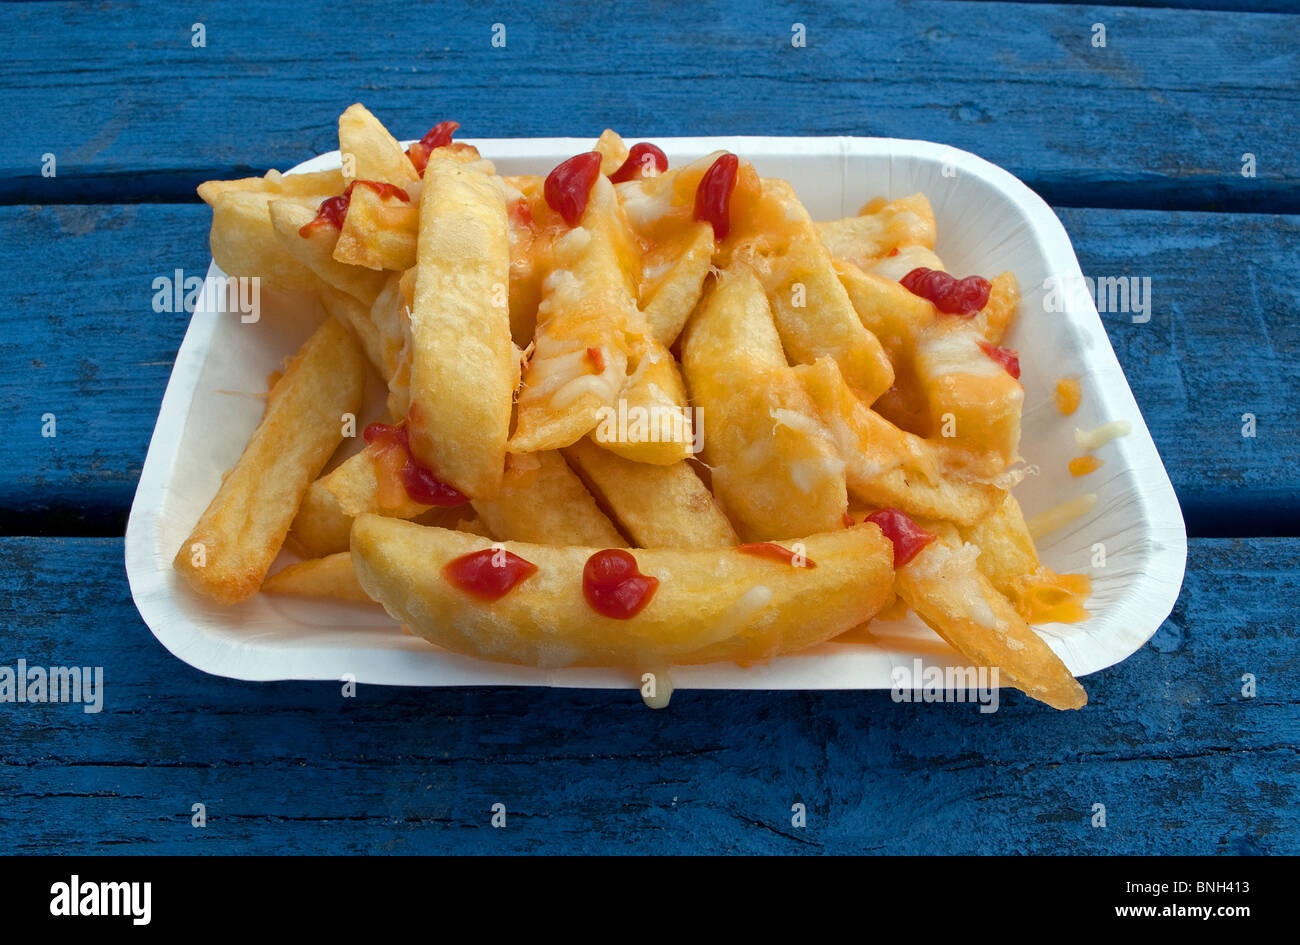 Una bandeja de chips fritos con la salsa de tomate ketchup sobre ellas Foto de stock